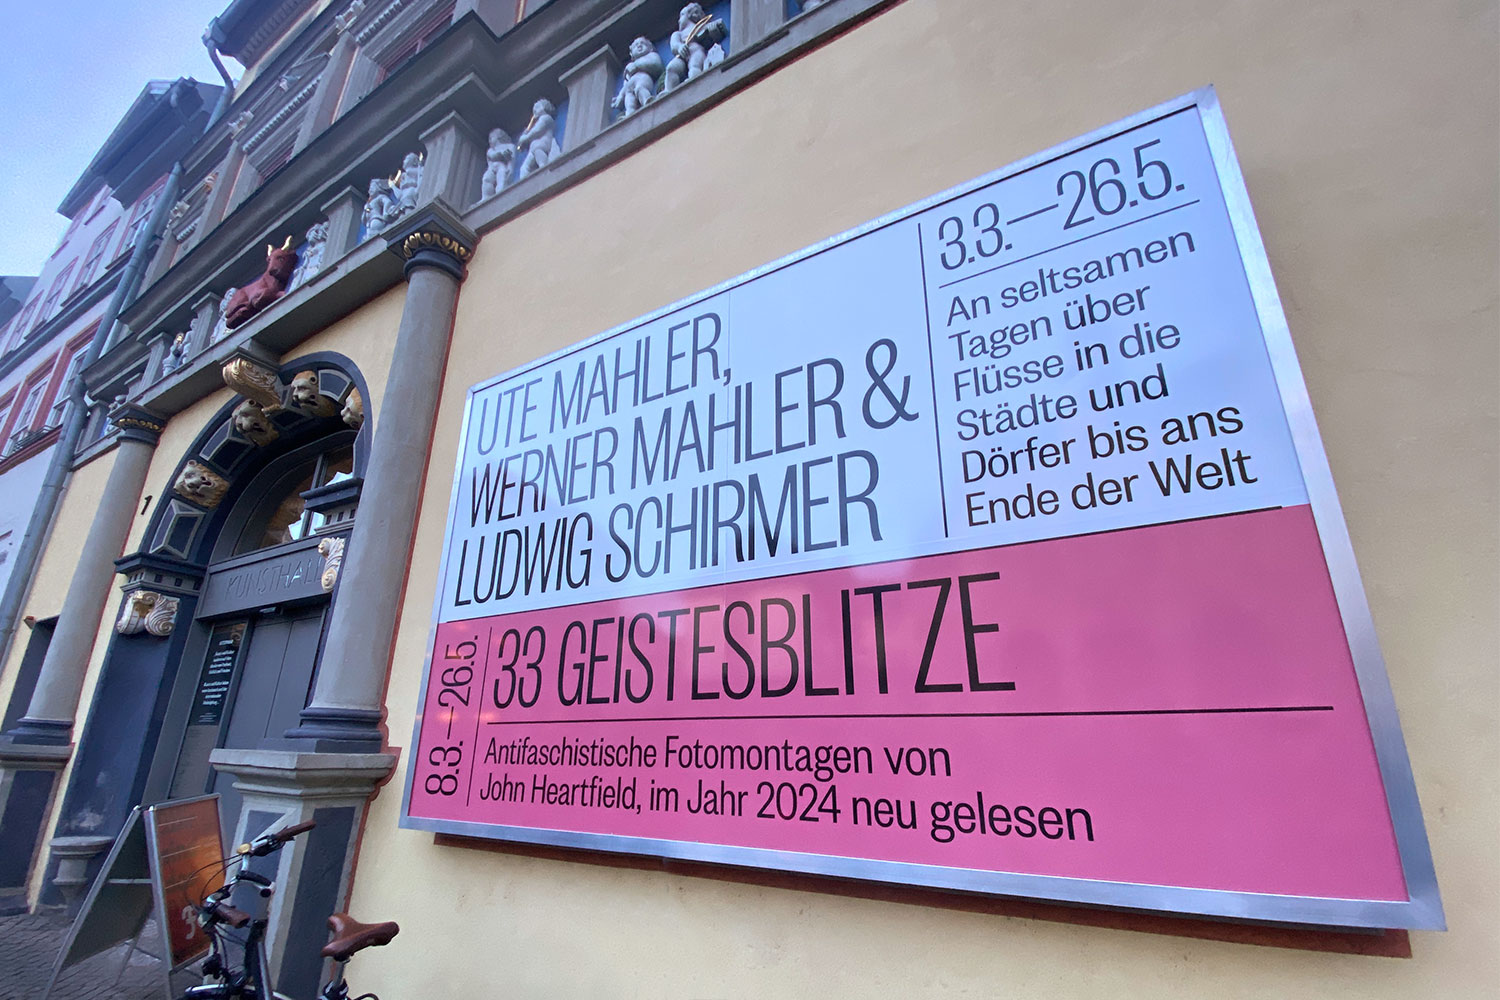 Kunsthalle Erfurt: Fotoausstellung Ute, Werner Mahler und Ludwig Schirmer (03.03.-26.05.2024)